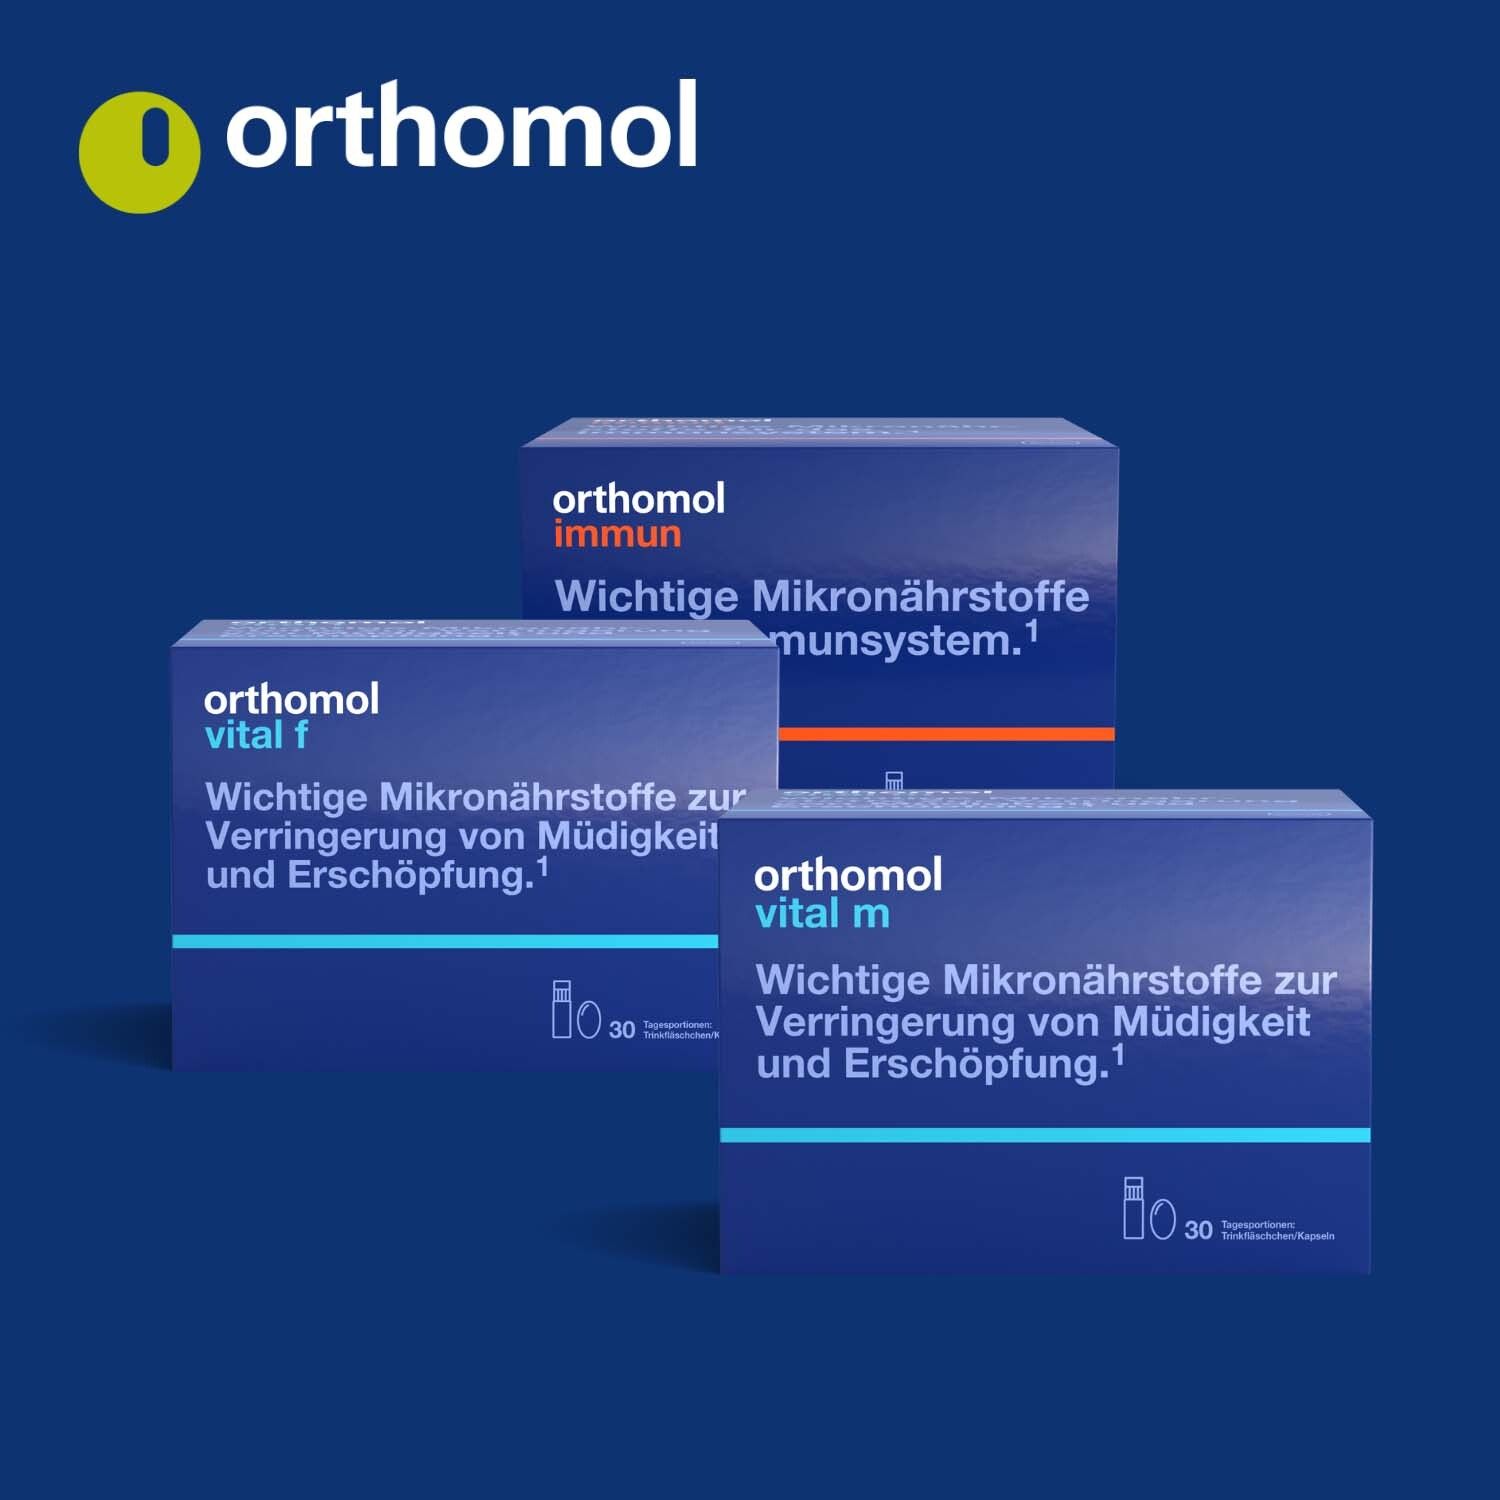 Orthomol Nemuri night - zur Verkürzung der Einschlafzeit - mit Melatonin und Hopfen-Extrakt - Direktgranulat